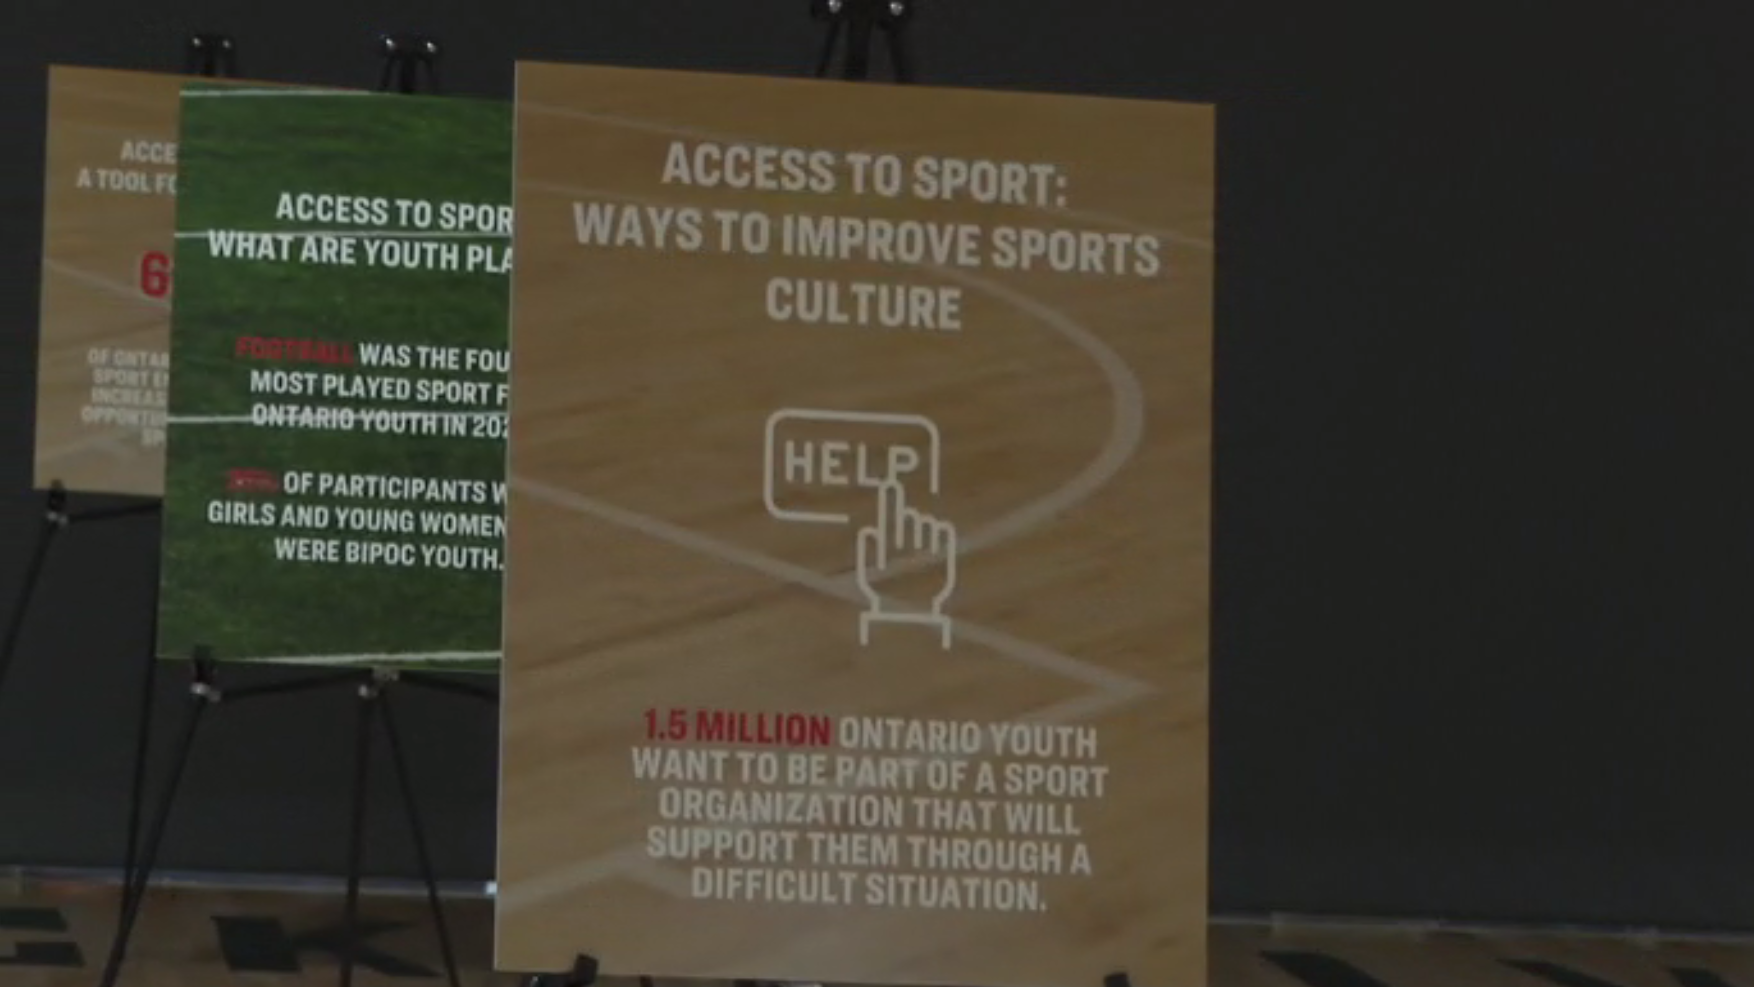 MLSE报告发现多个阻碍，导致安大略省青少年参与体育运动的问题